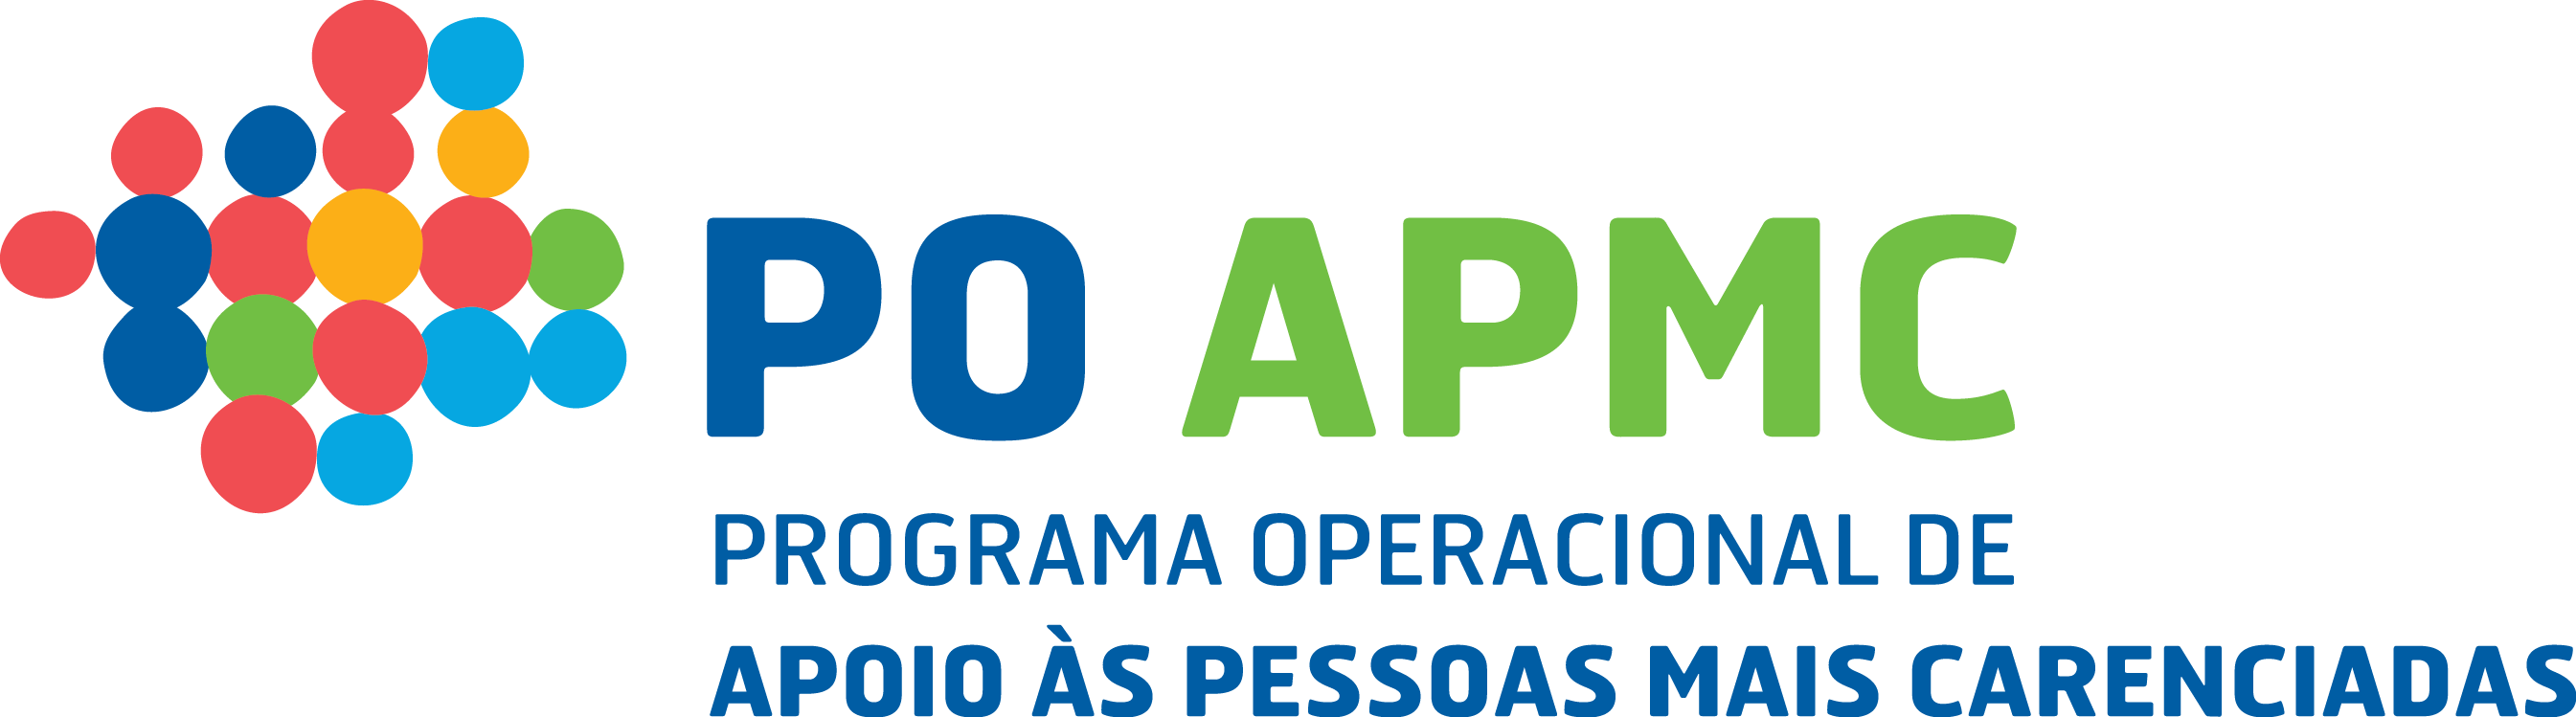 POAPMC - Programa Operacional de Apoio às Pessoas Mais Carenciadas